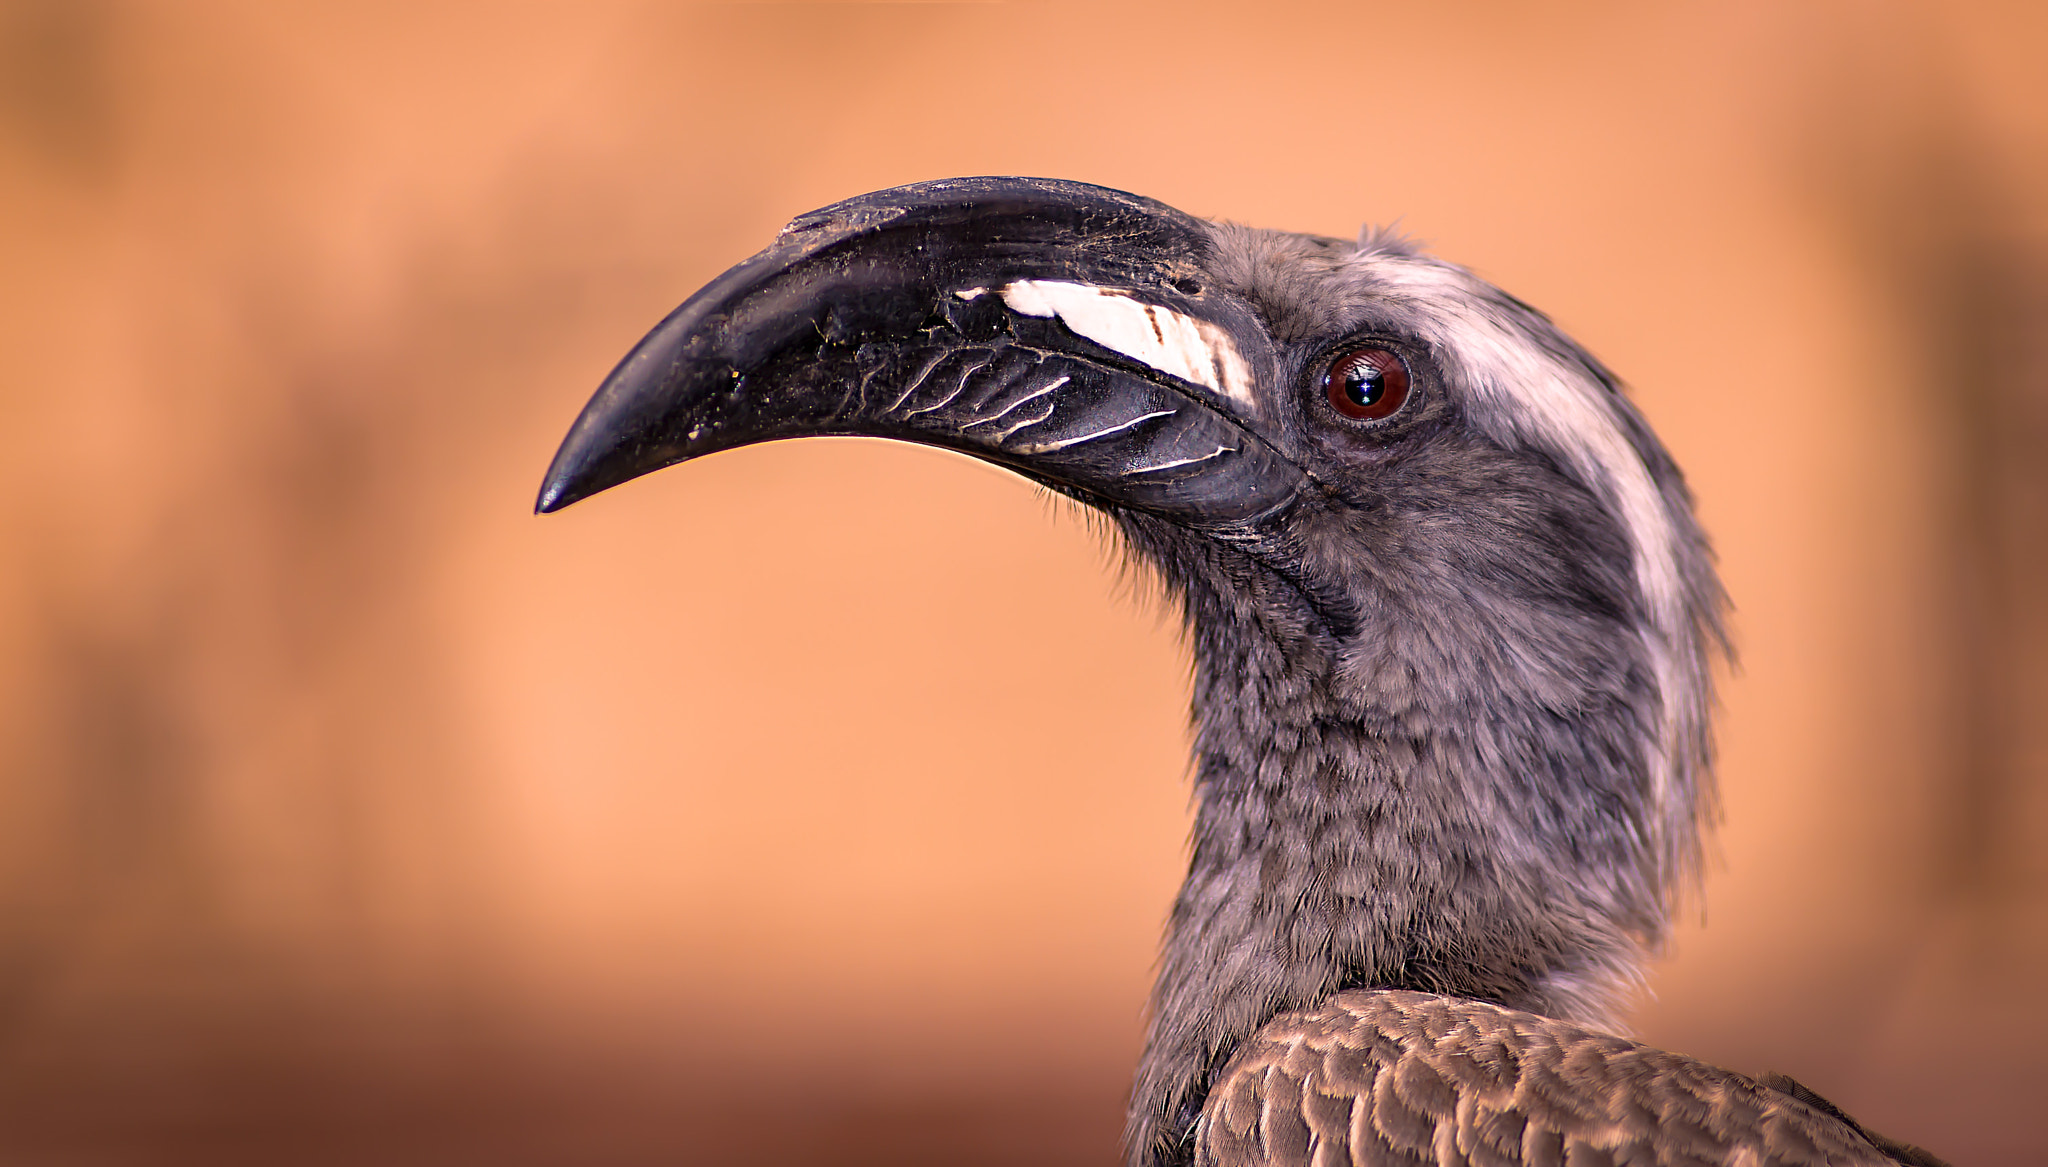 AF Nikkor 180mm f/2.8 IF-ED sample photo. African grey hornbill photography